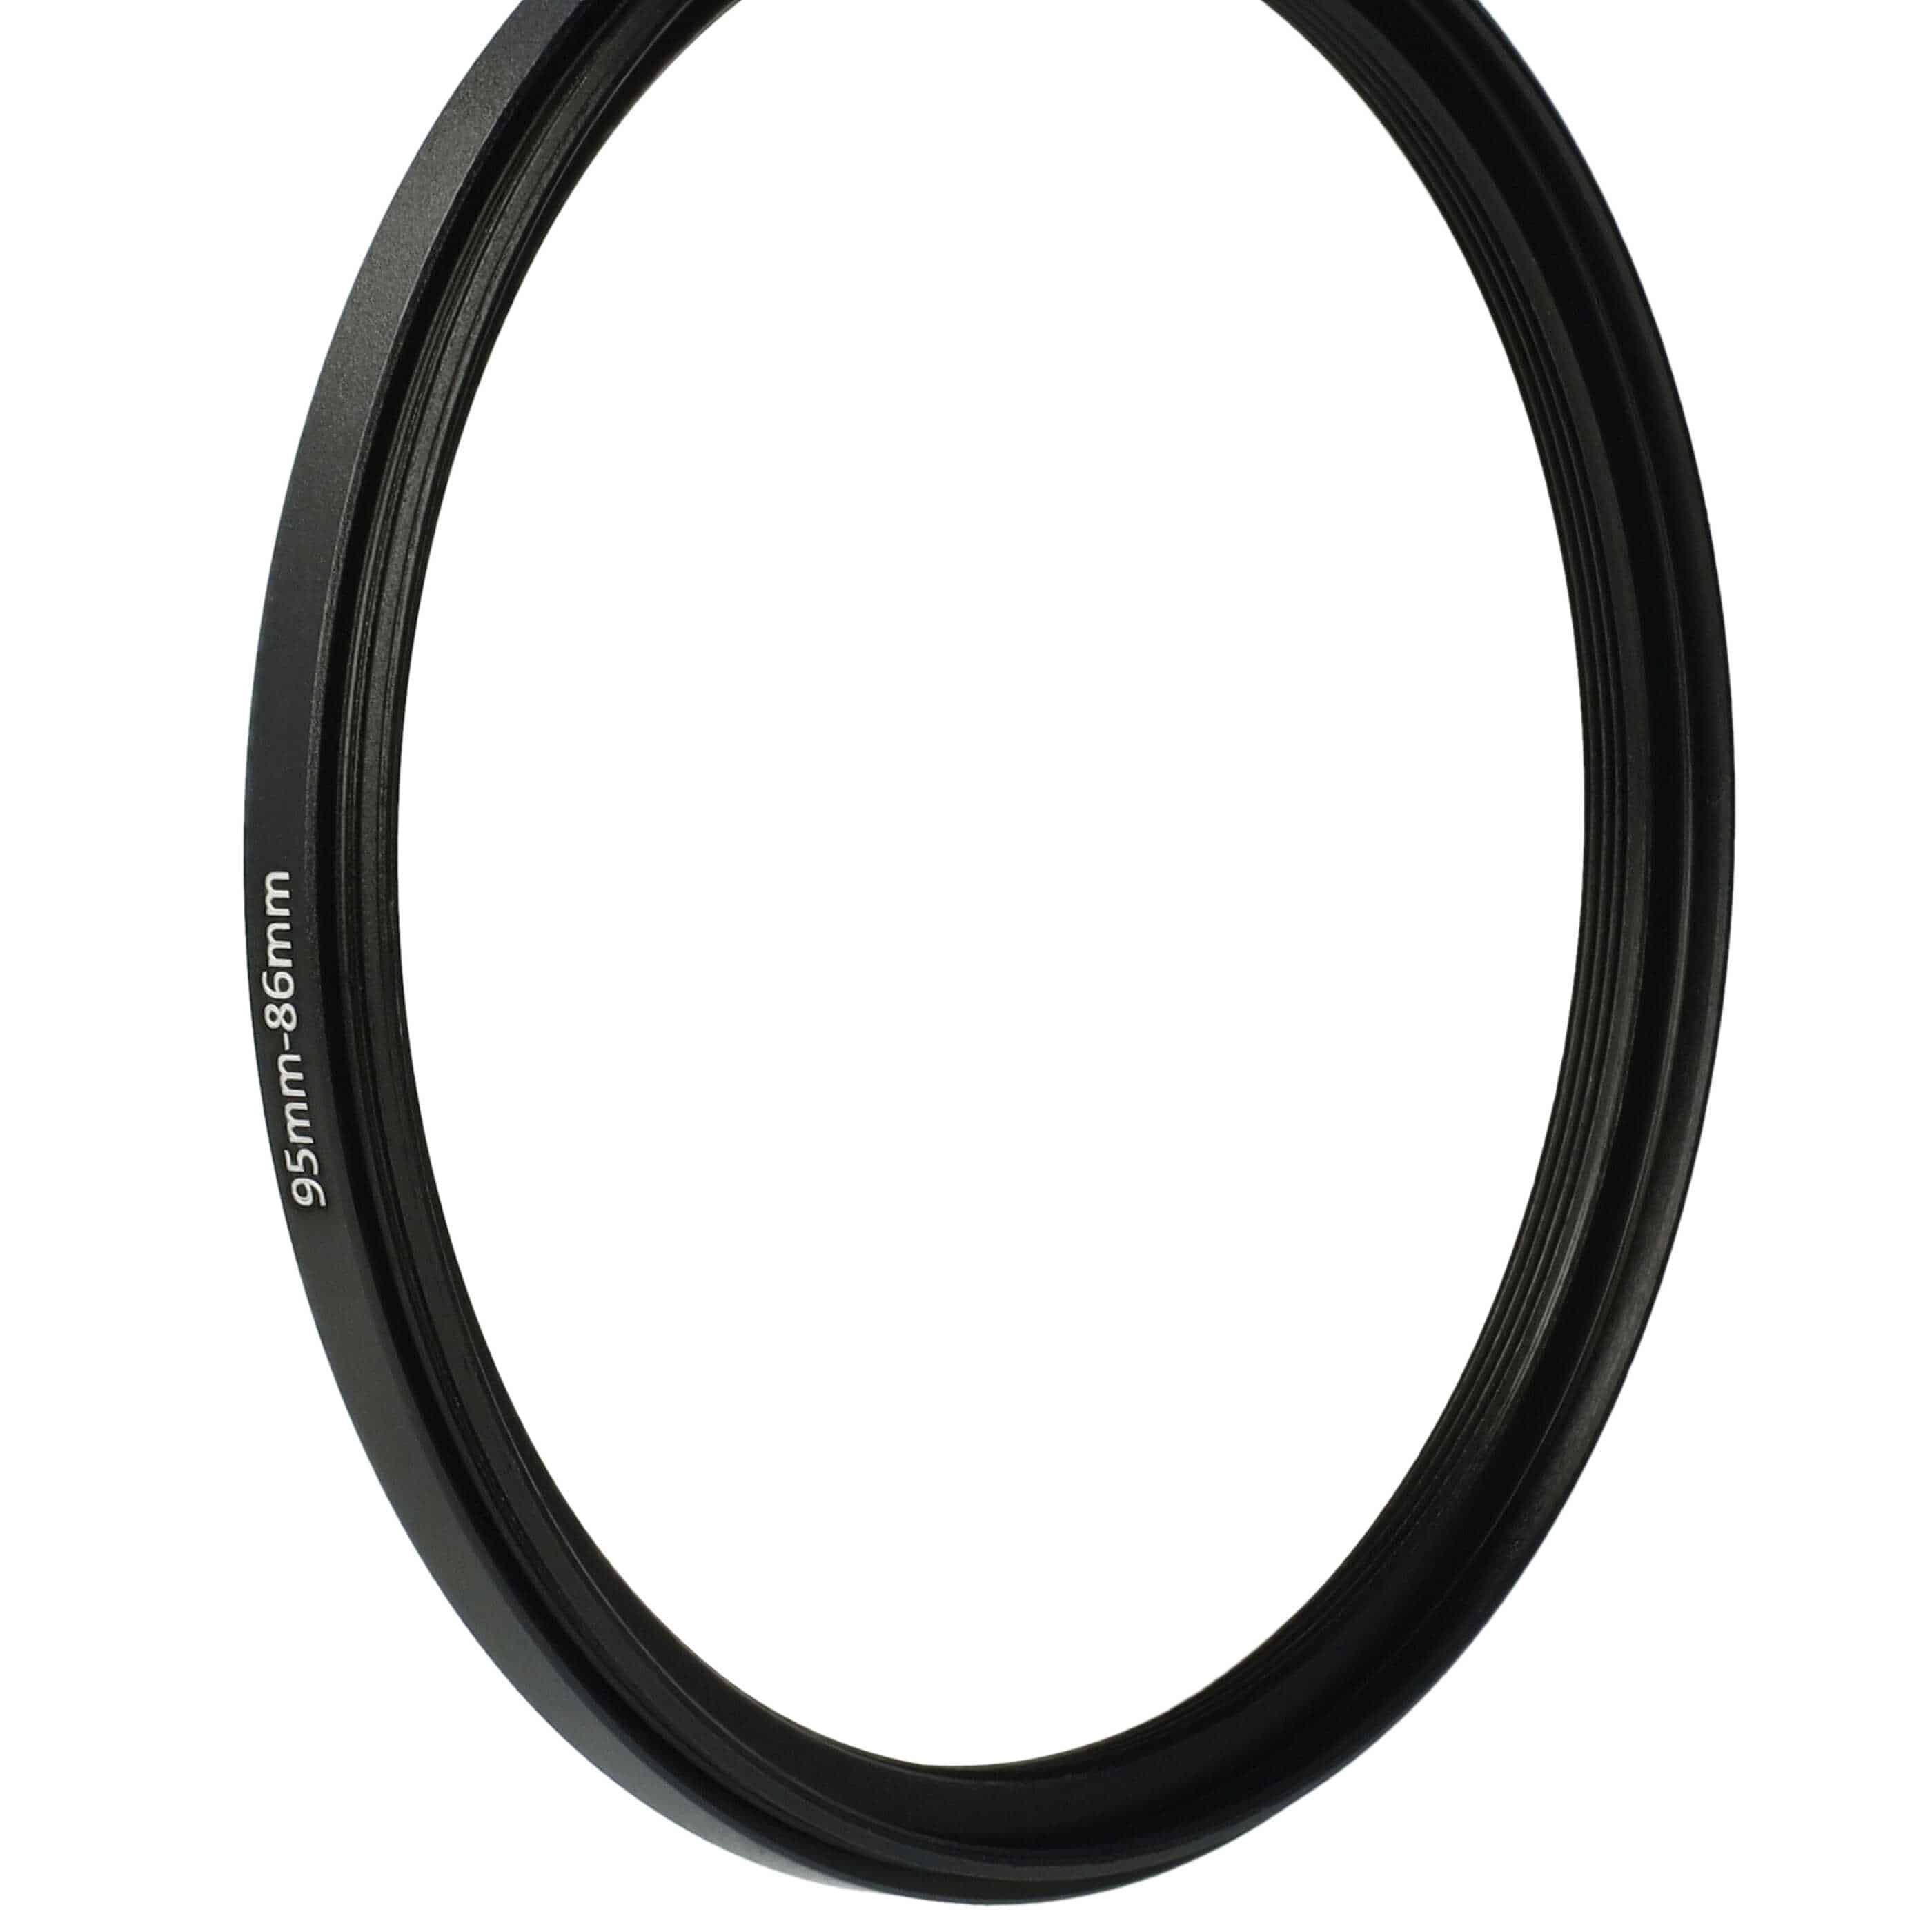 Step-Down-Ring Adapter von 95 mm auf 86 mm passend für Kamera Objektiv - Filteradapter, Metall, schwarz